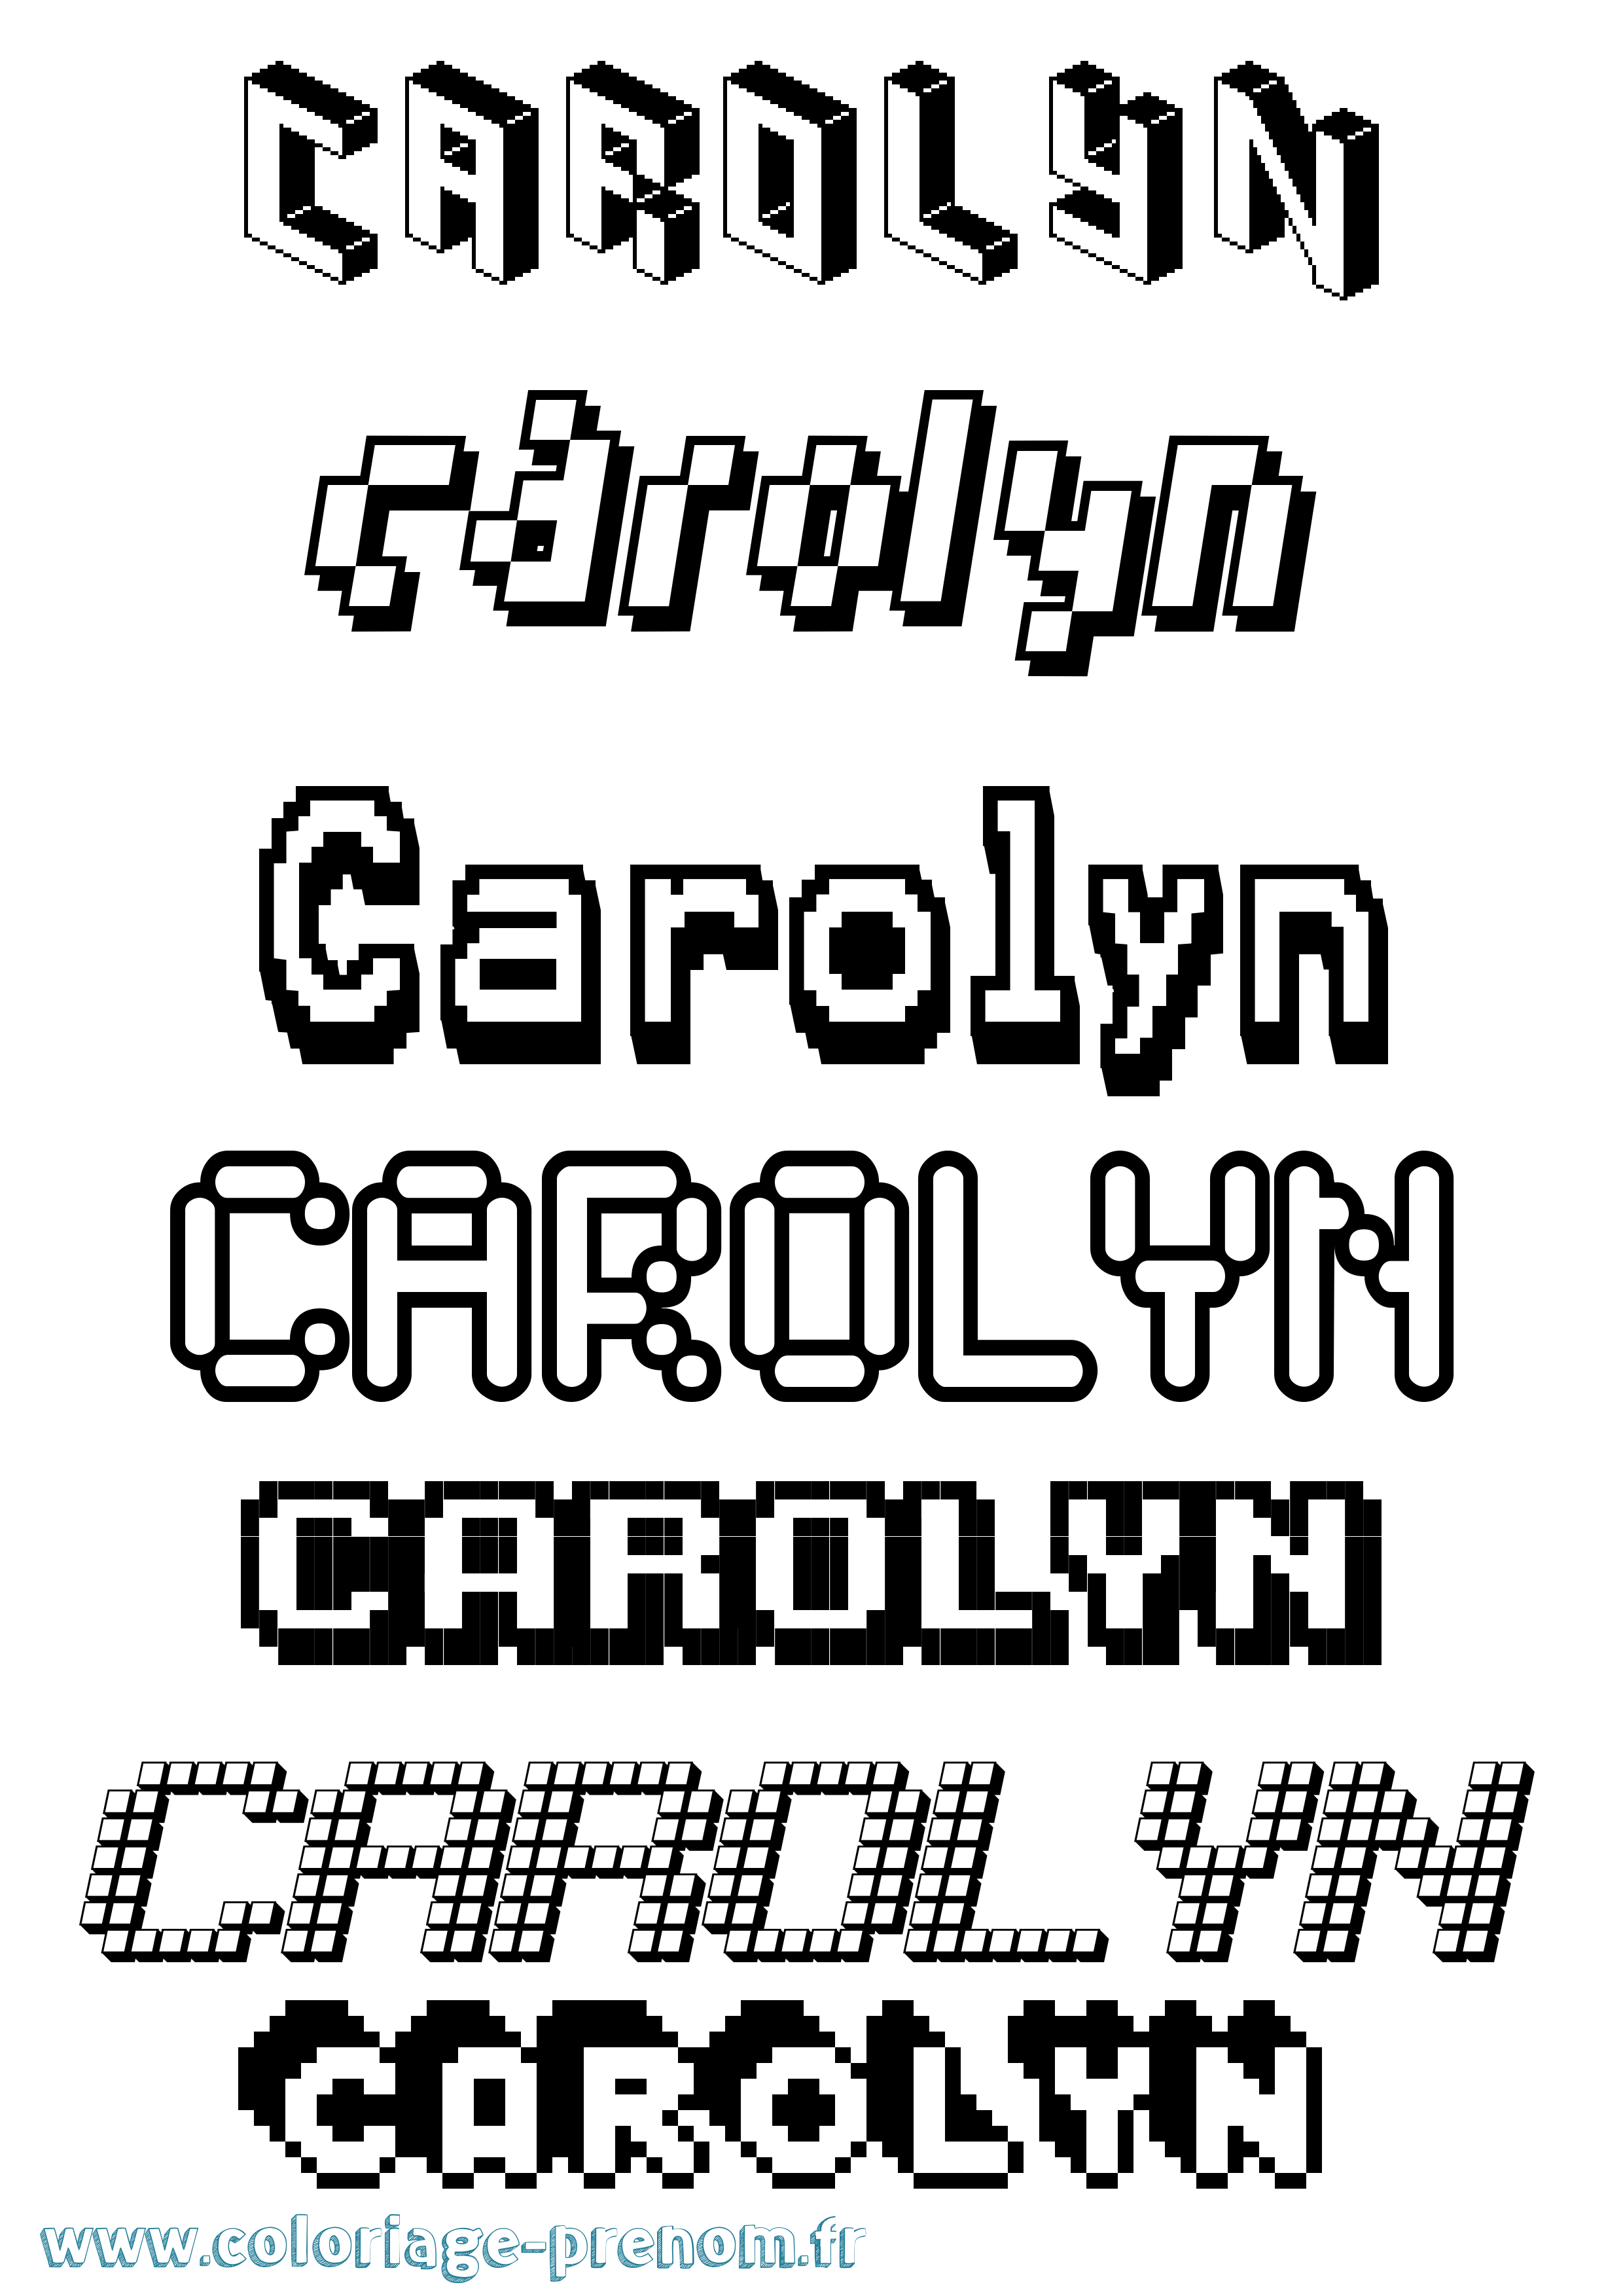 Coloriage prénom Carolyn Pixel